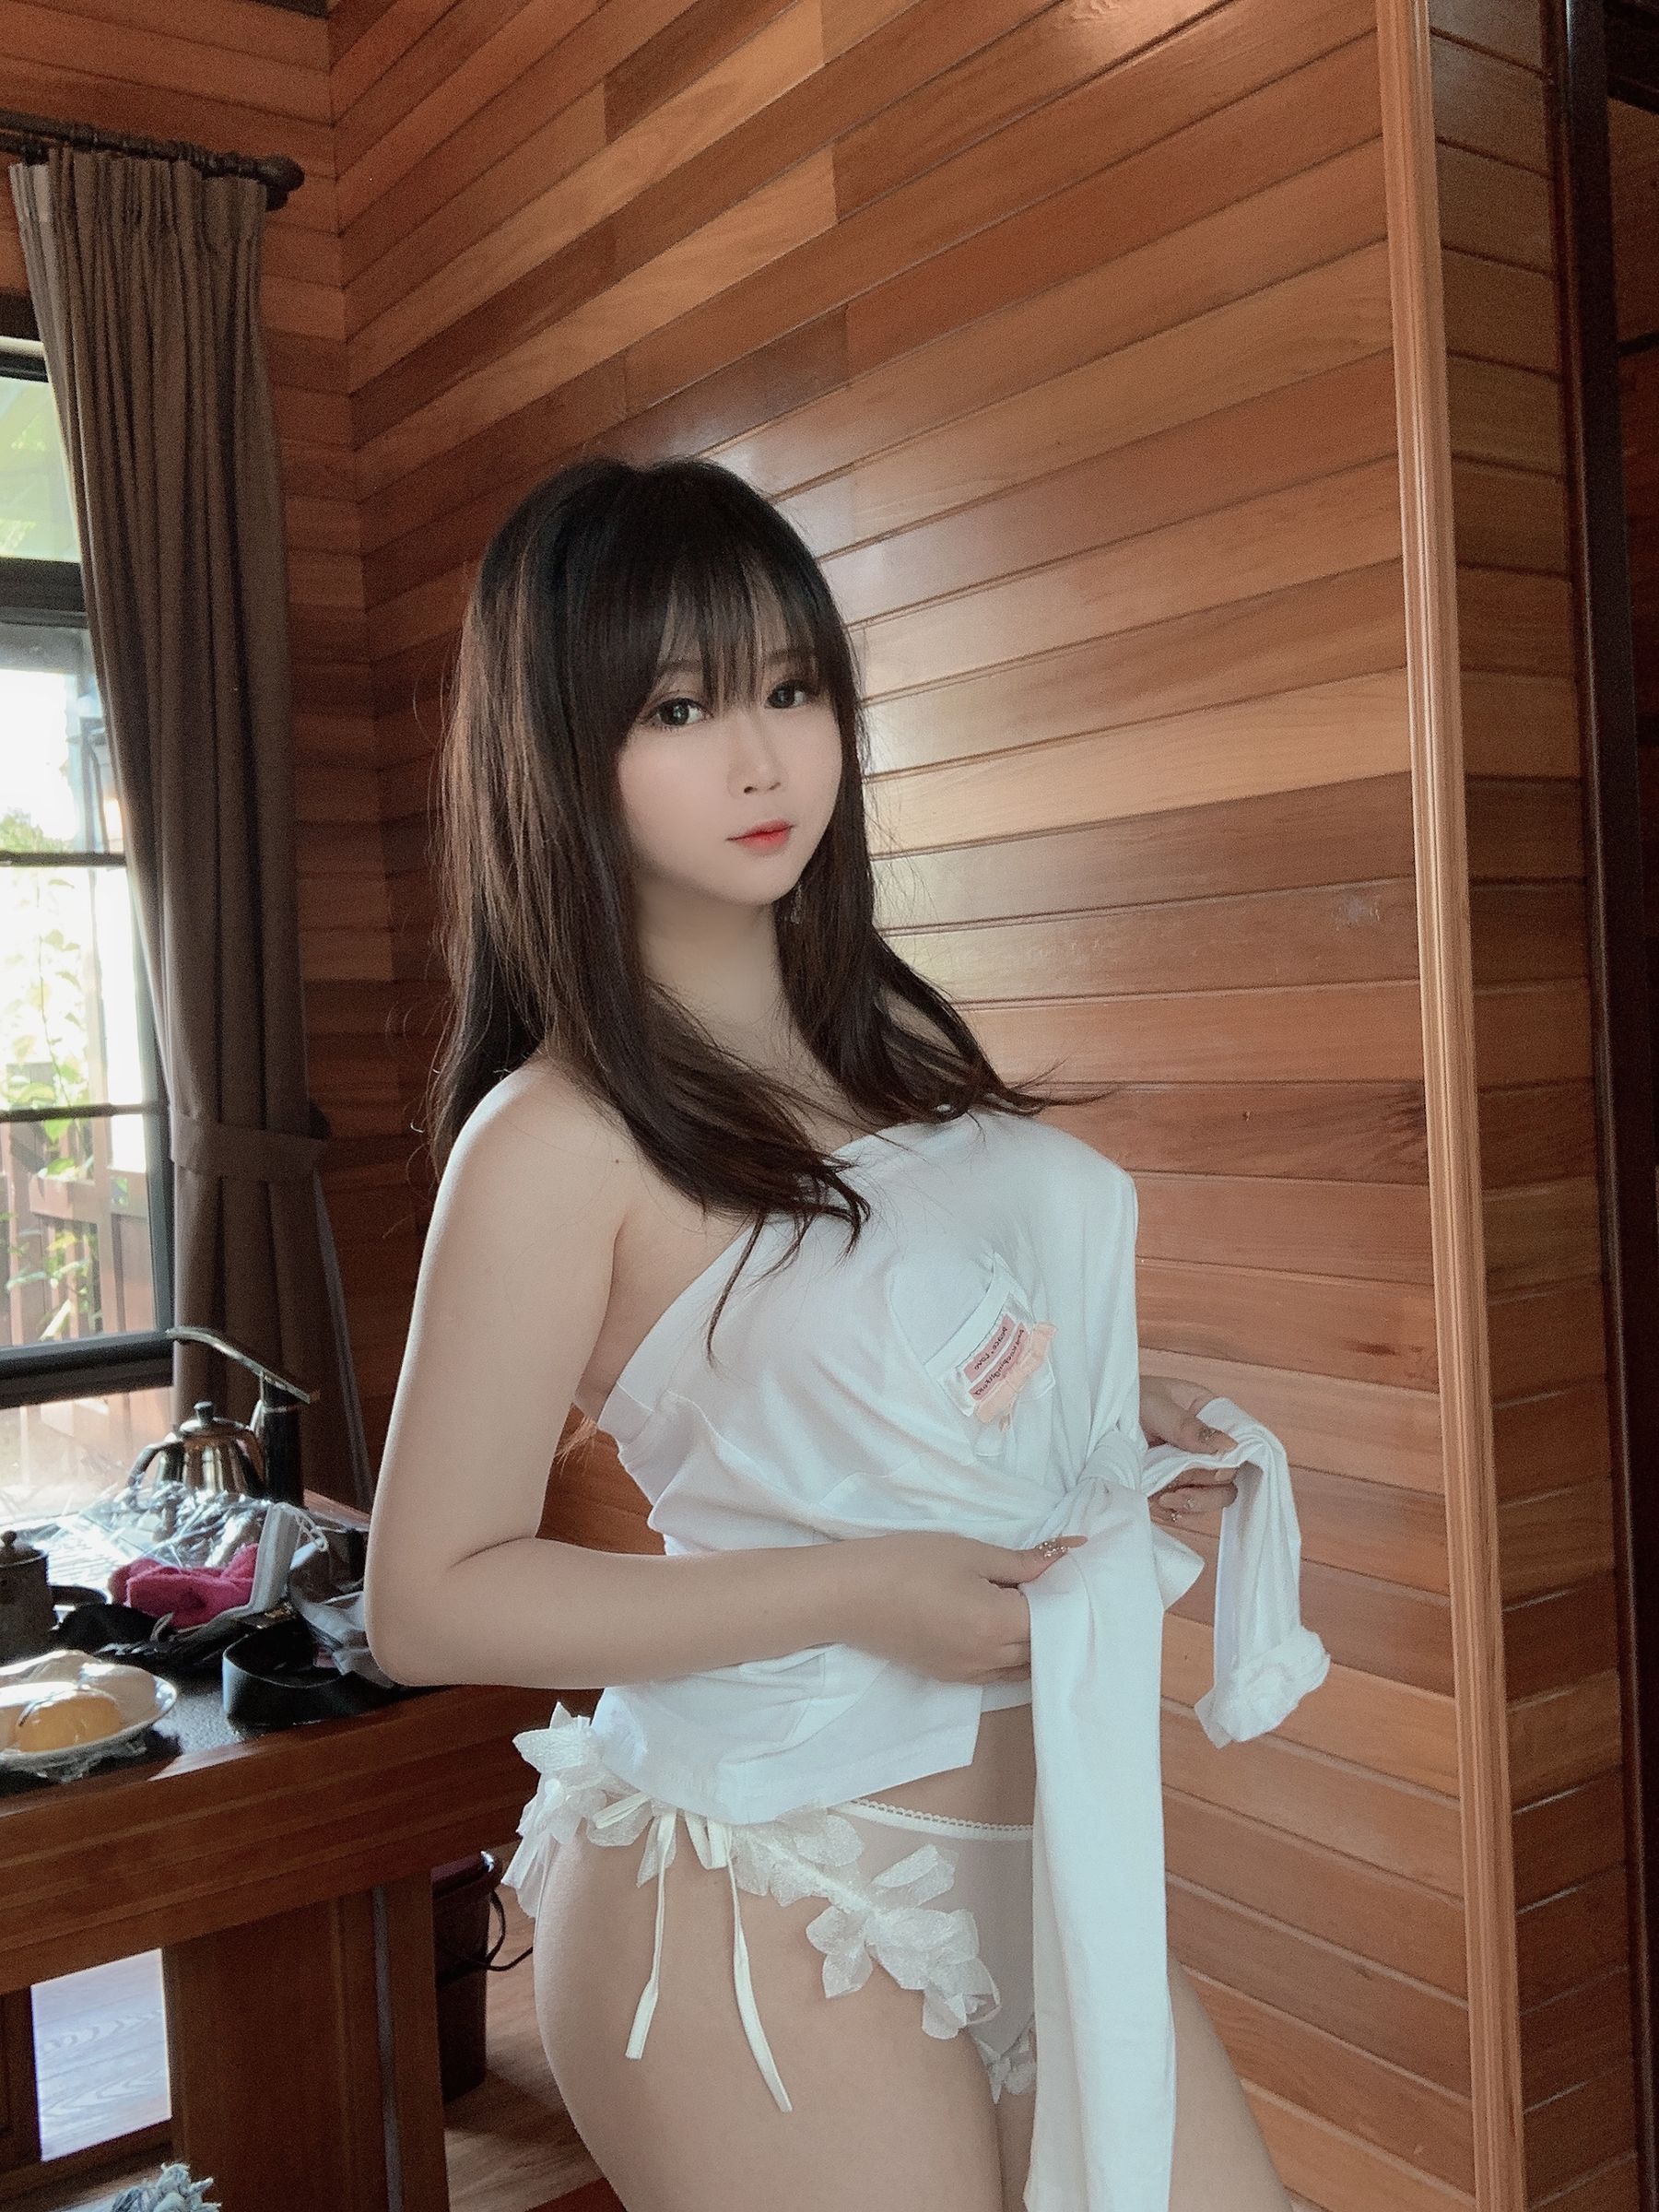 [Cosplay-Foto] Das pfirsichfarbene Mädchen ist Yijiang-Summer Seite 38 No.5badb2